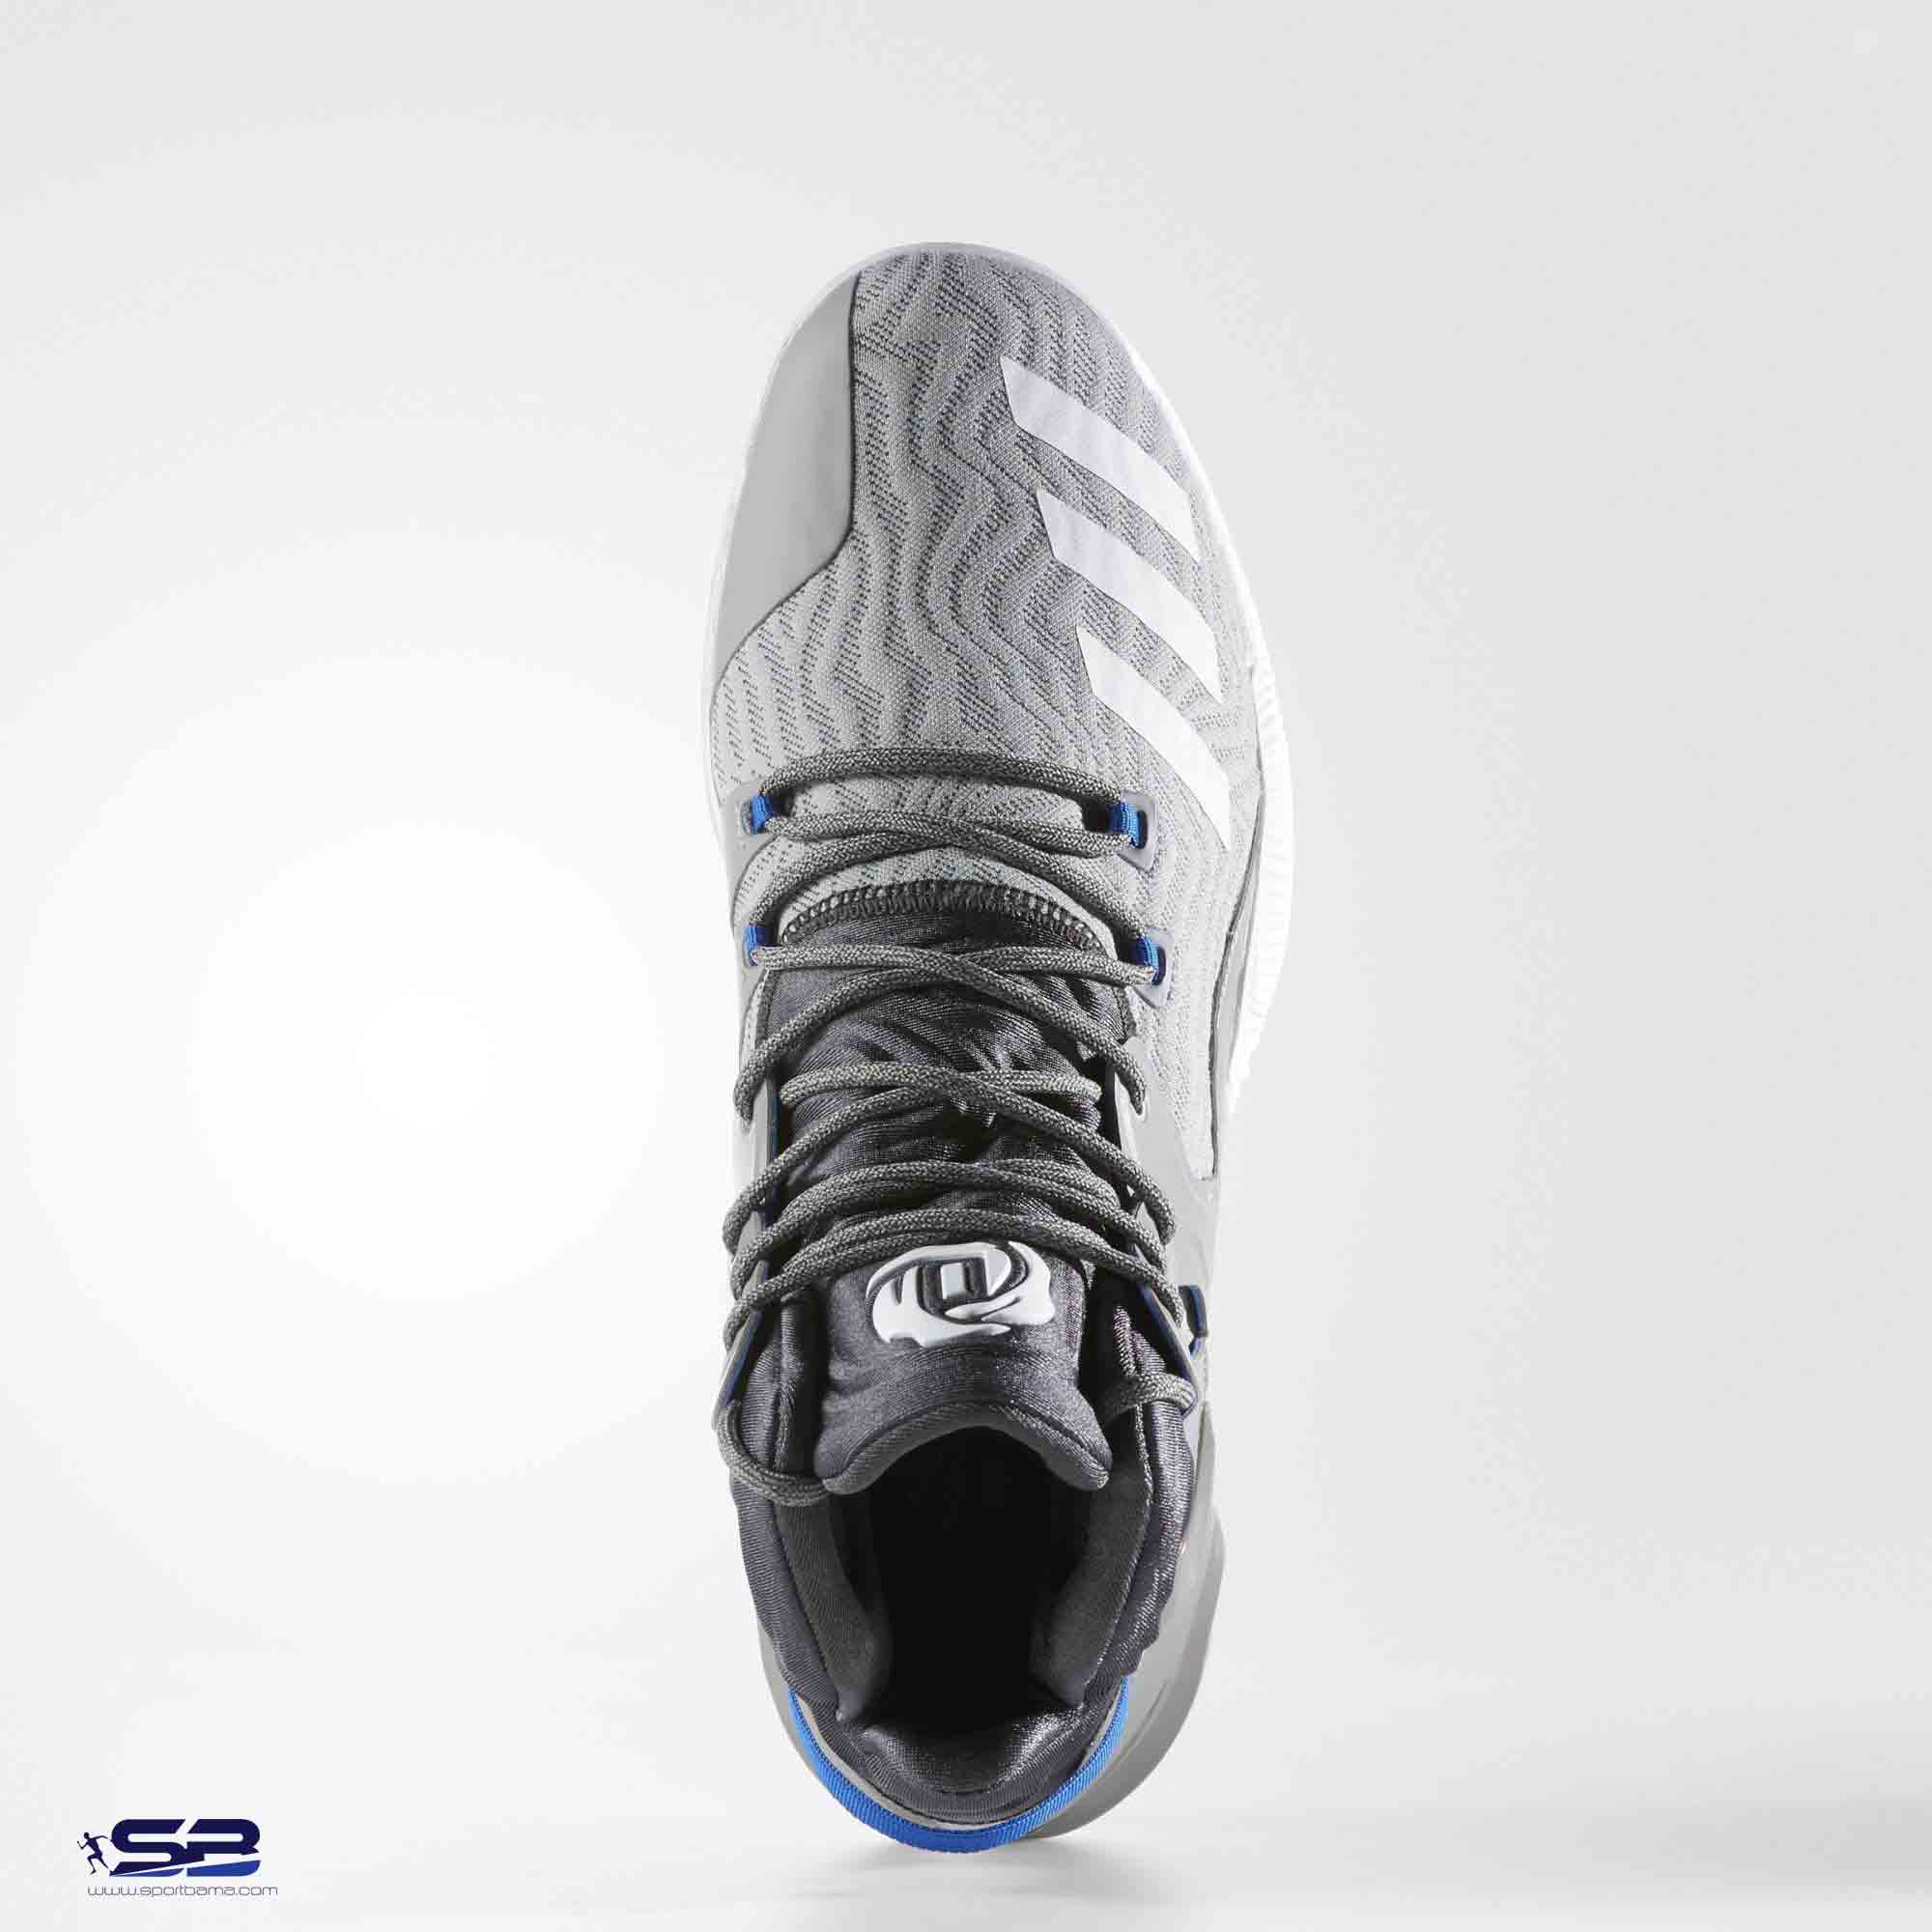  خرید  کفش کتانی ادیداس مخصوص بسکتبال   Adidas rose gray